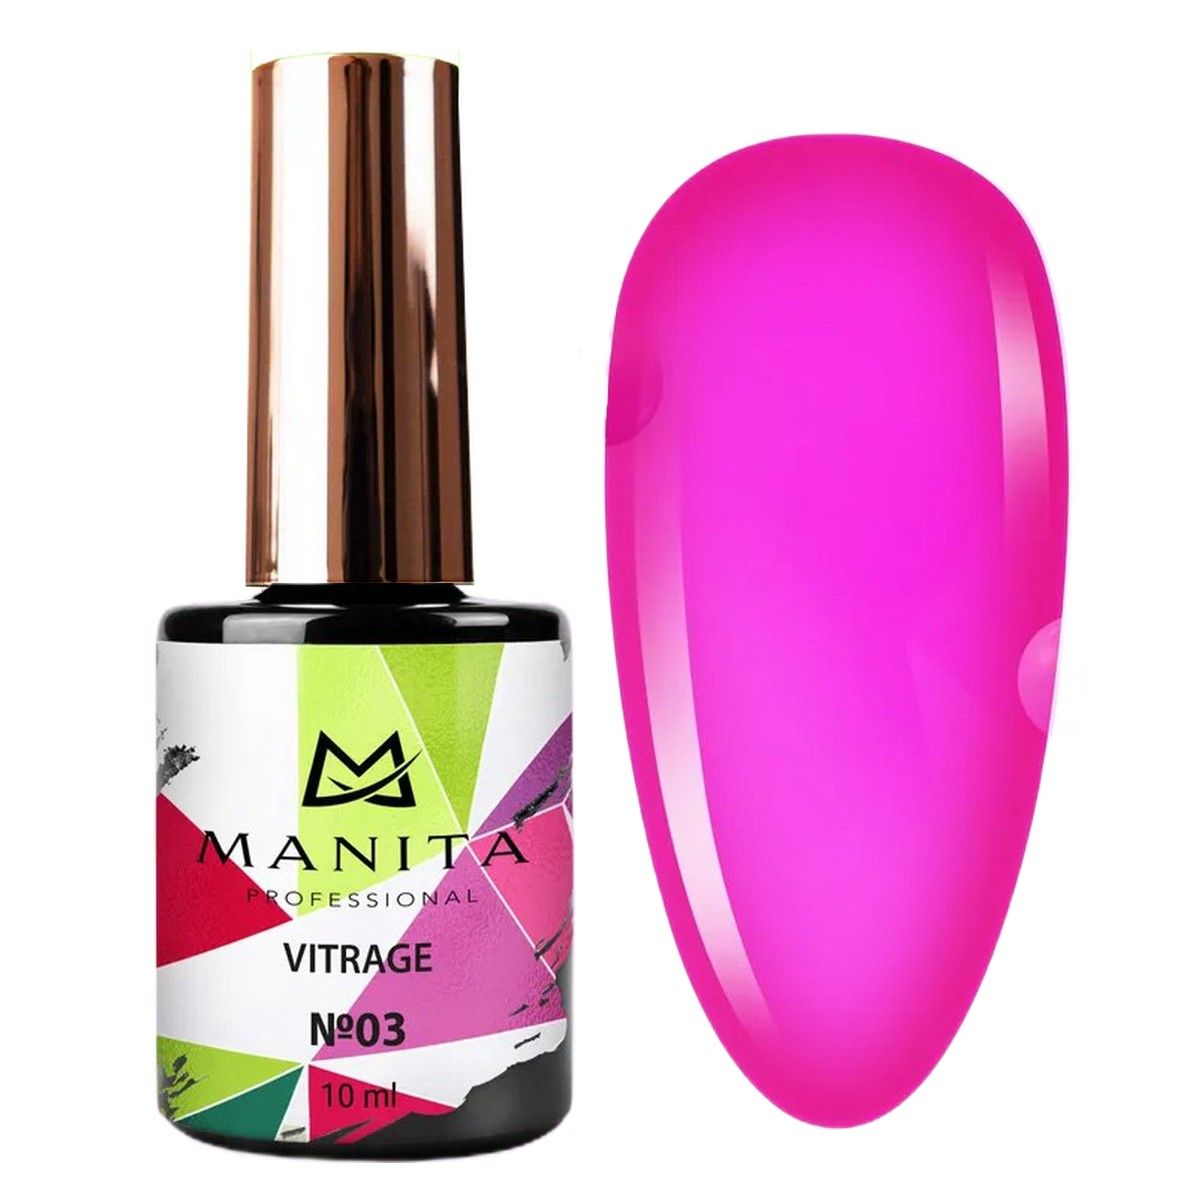 Гель-лак для ногтей Manita Professional c эффектом витража Vitrage №03 ярко-розовый 10 мл manita база каучуковая для гель лака rubber base